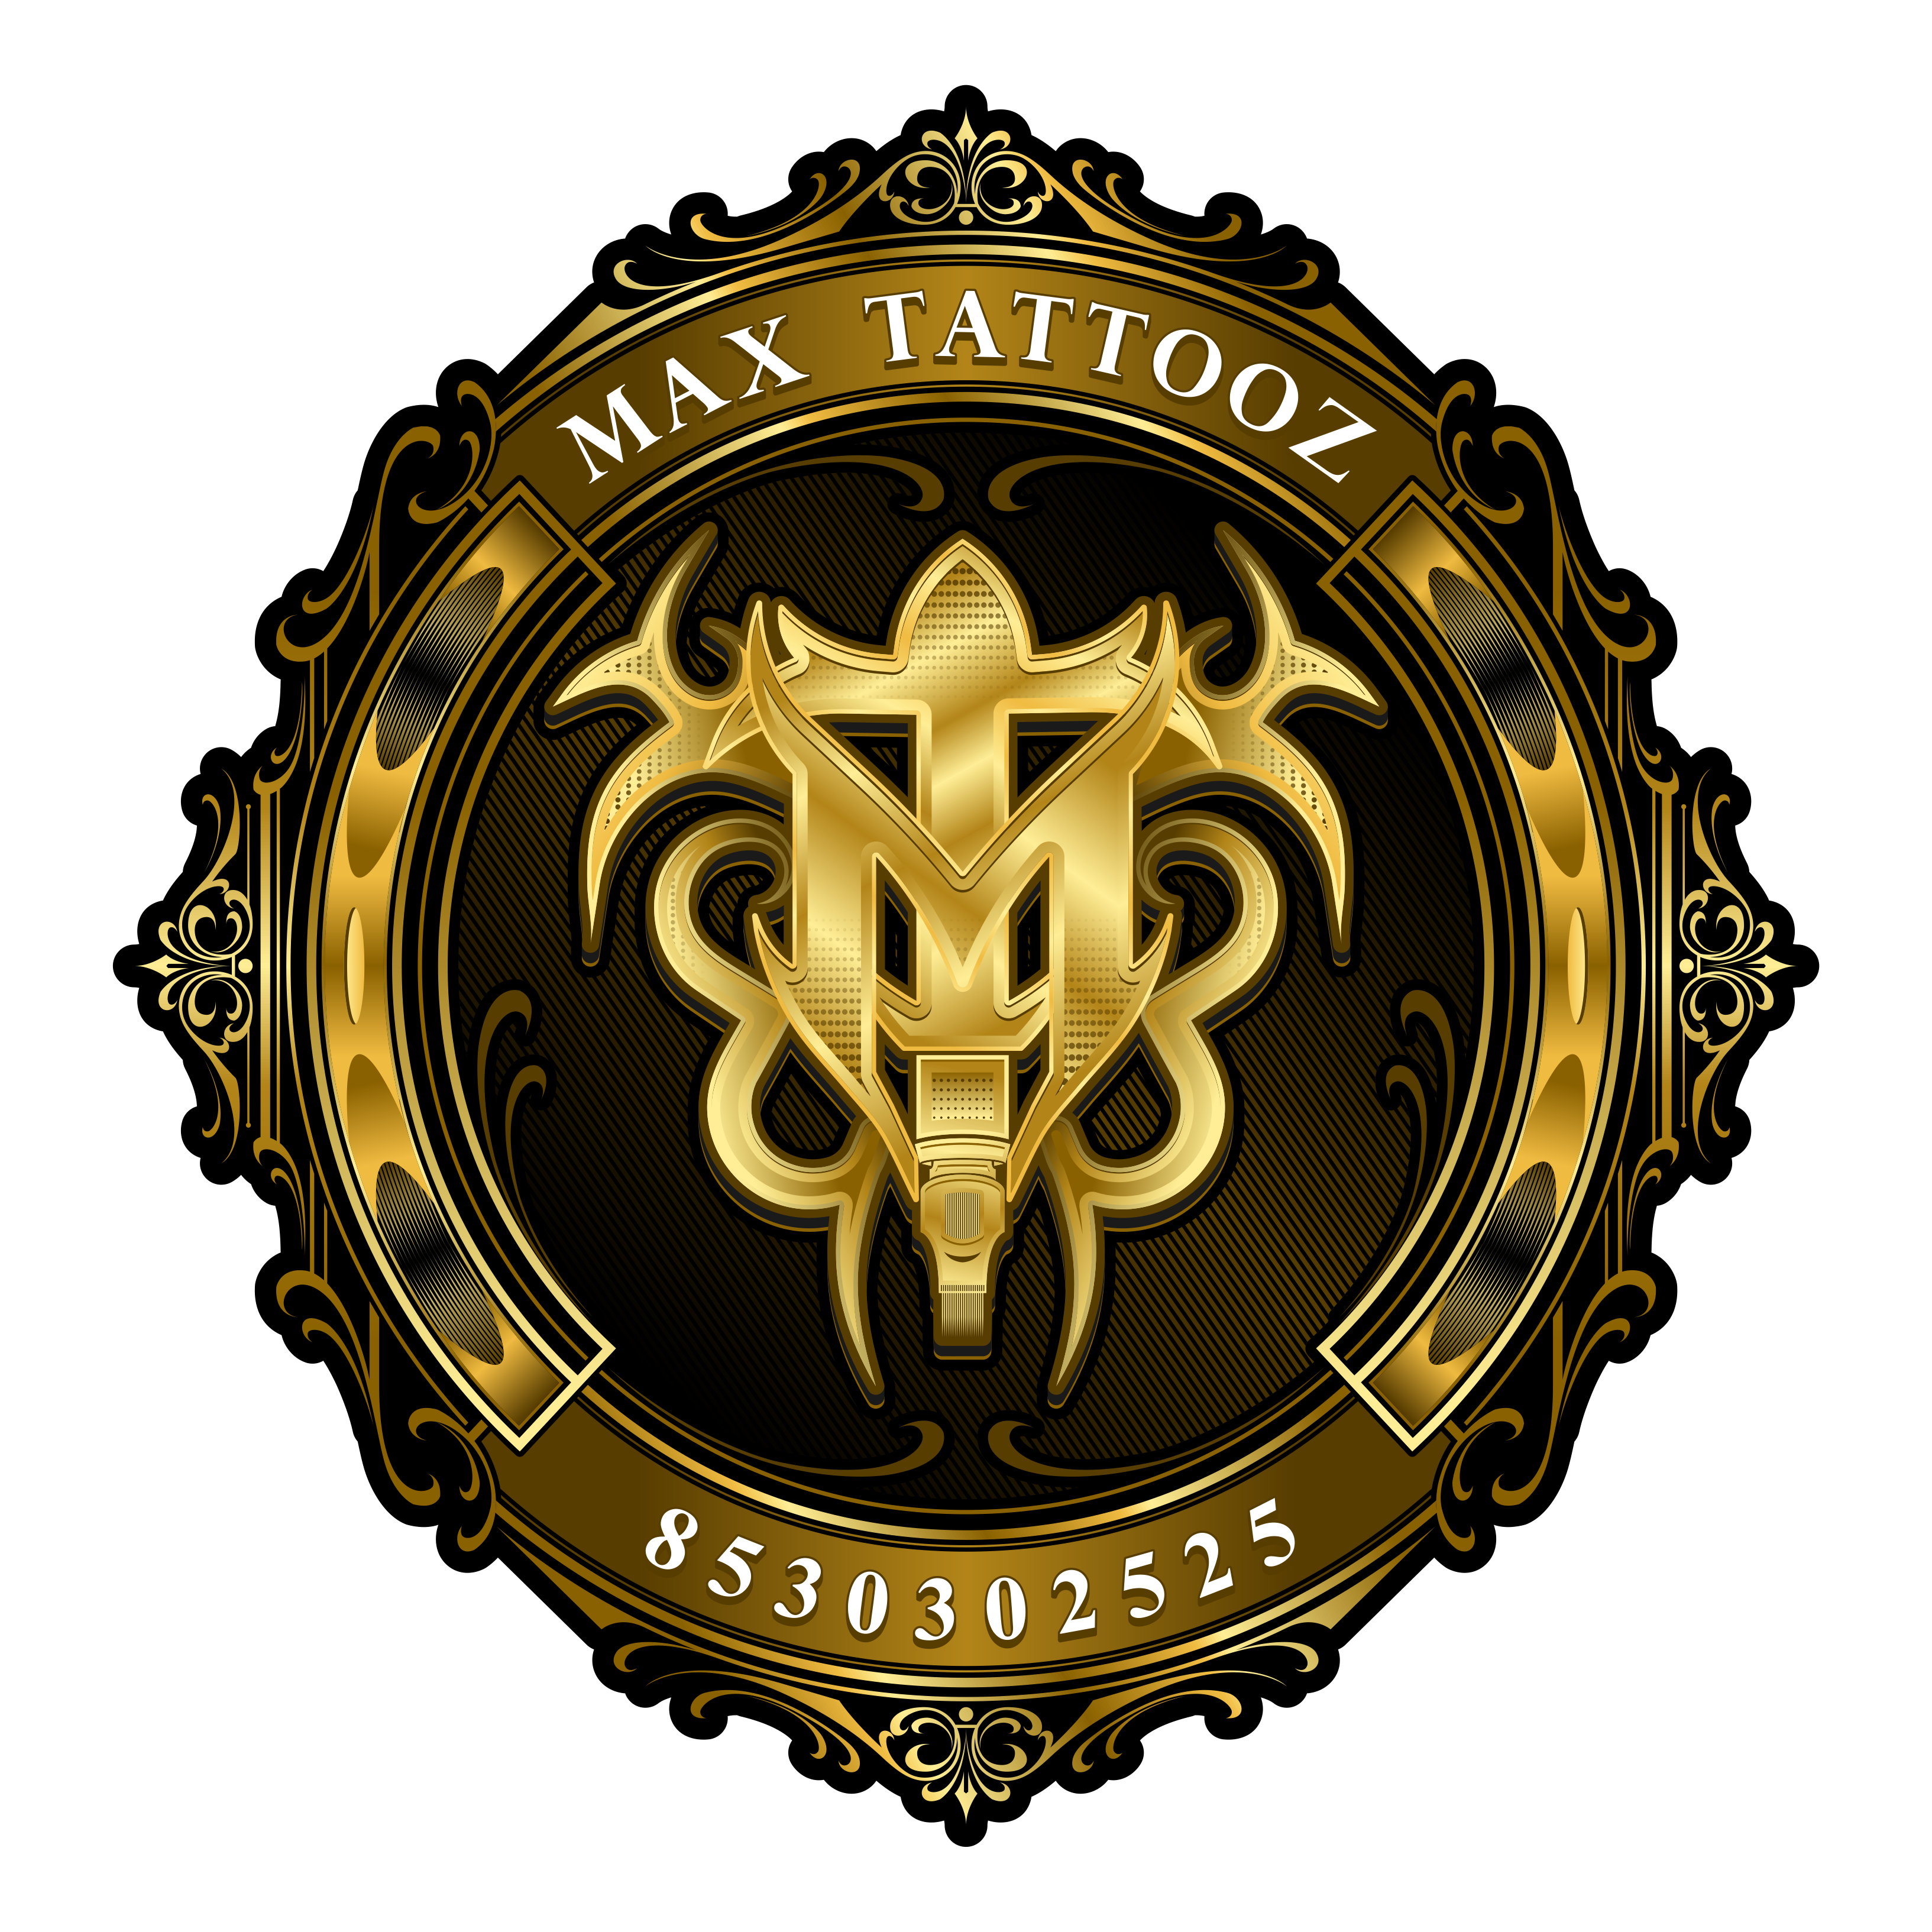 Max tattoo